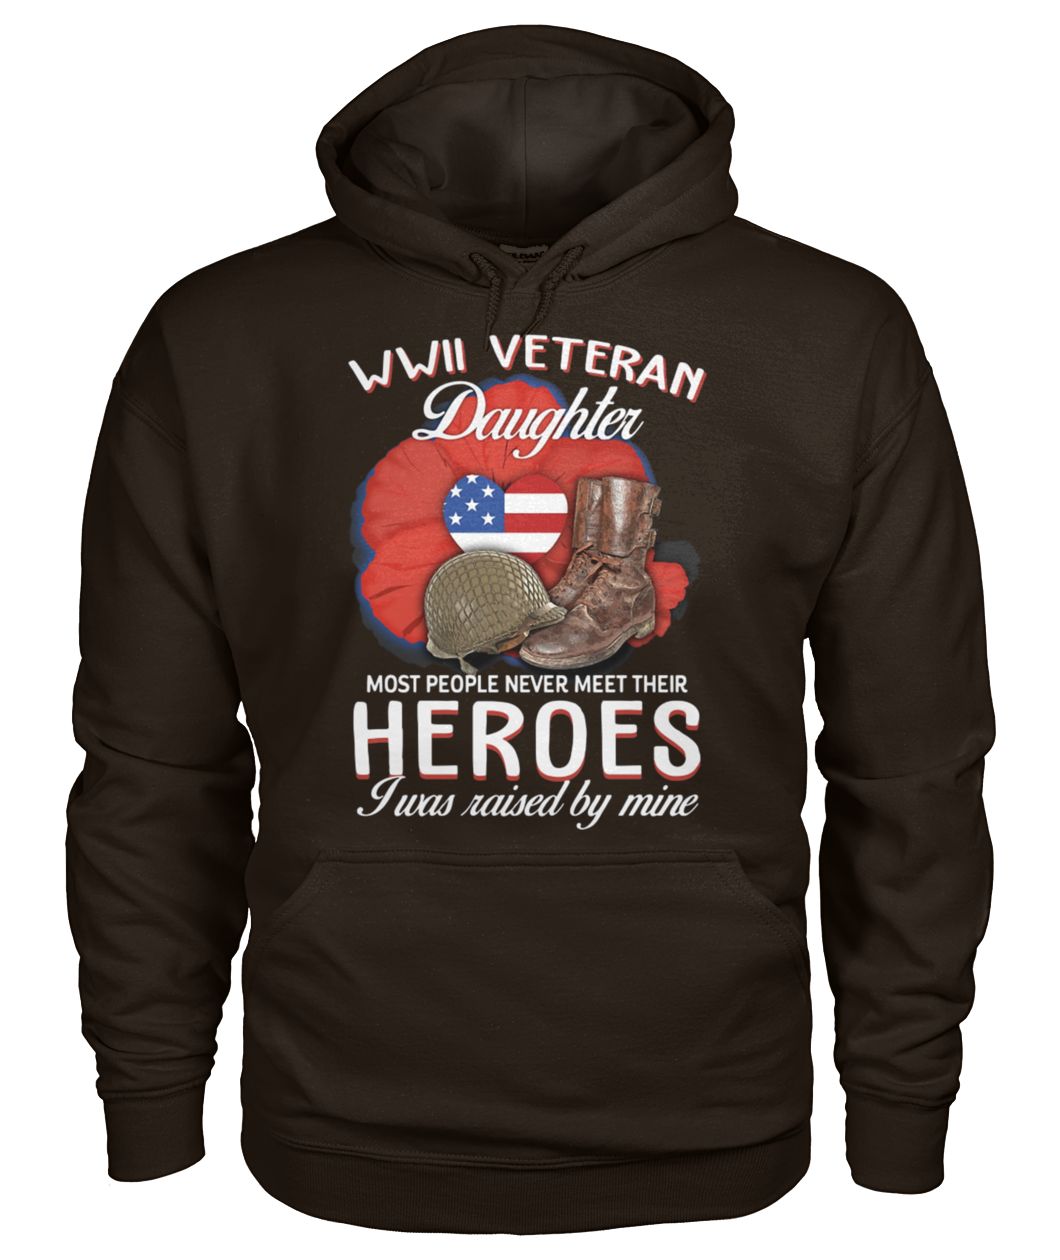 WWII Veteran daughter most people never meet their heroes I was raised by mine gildan hoodie